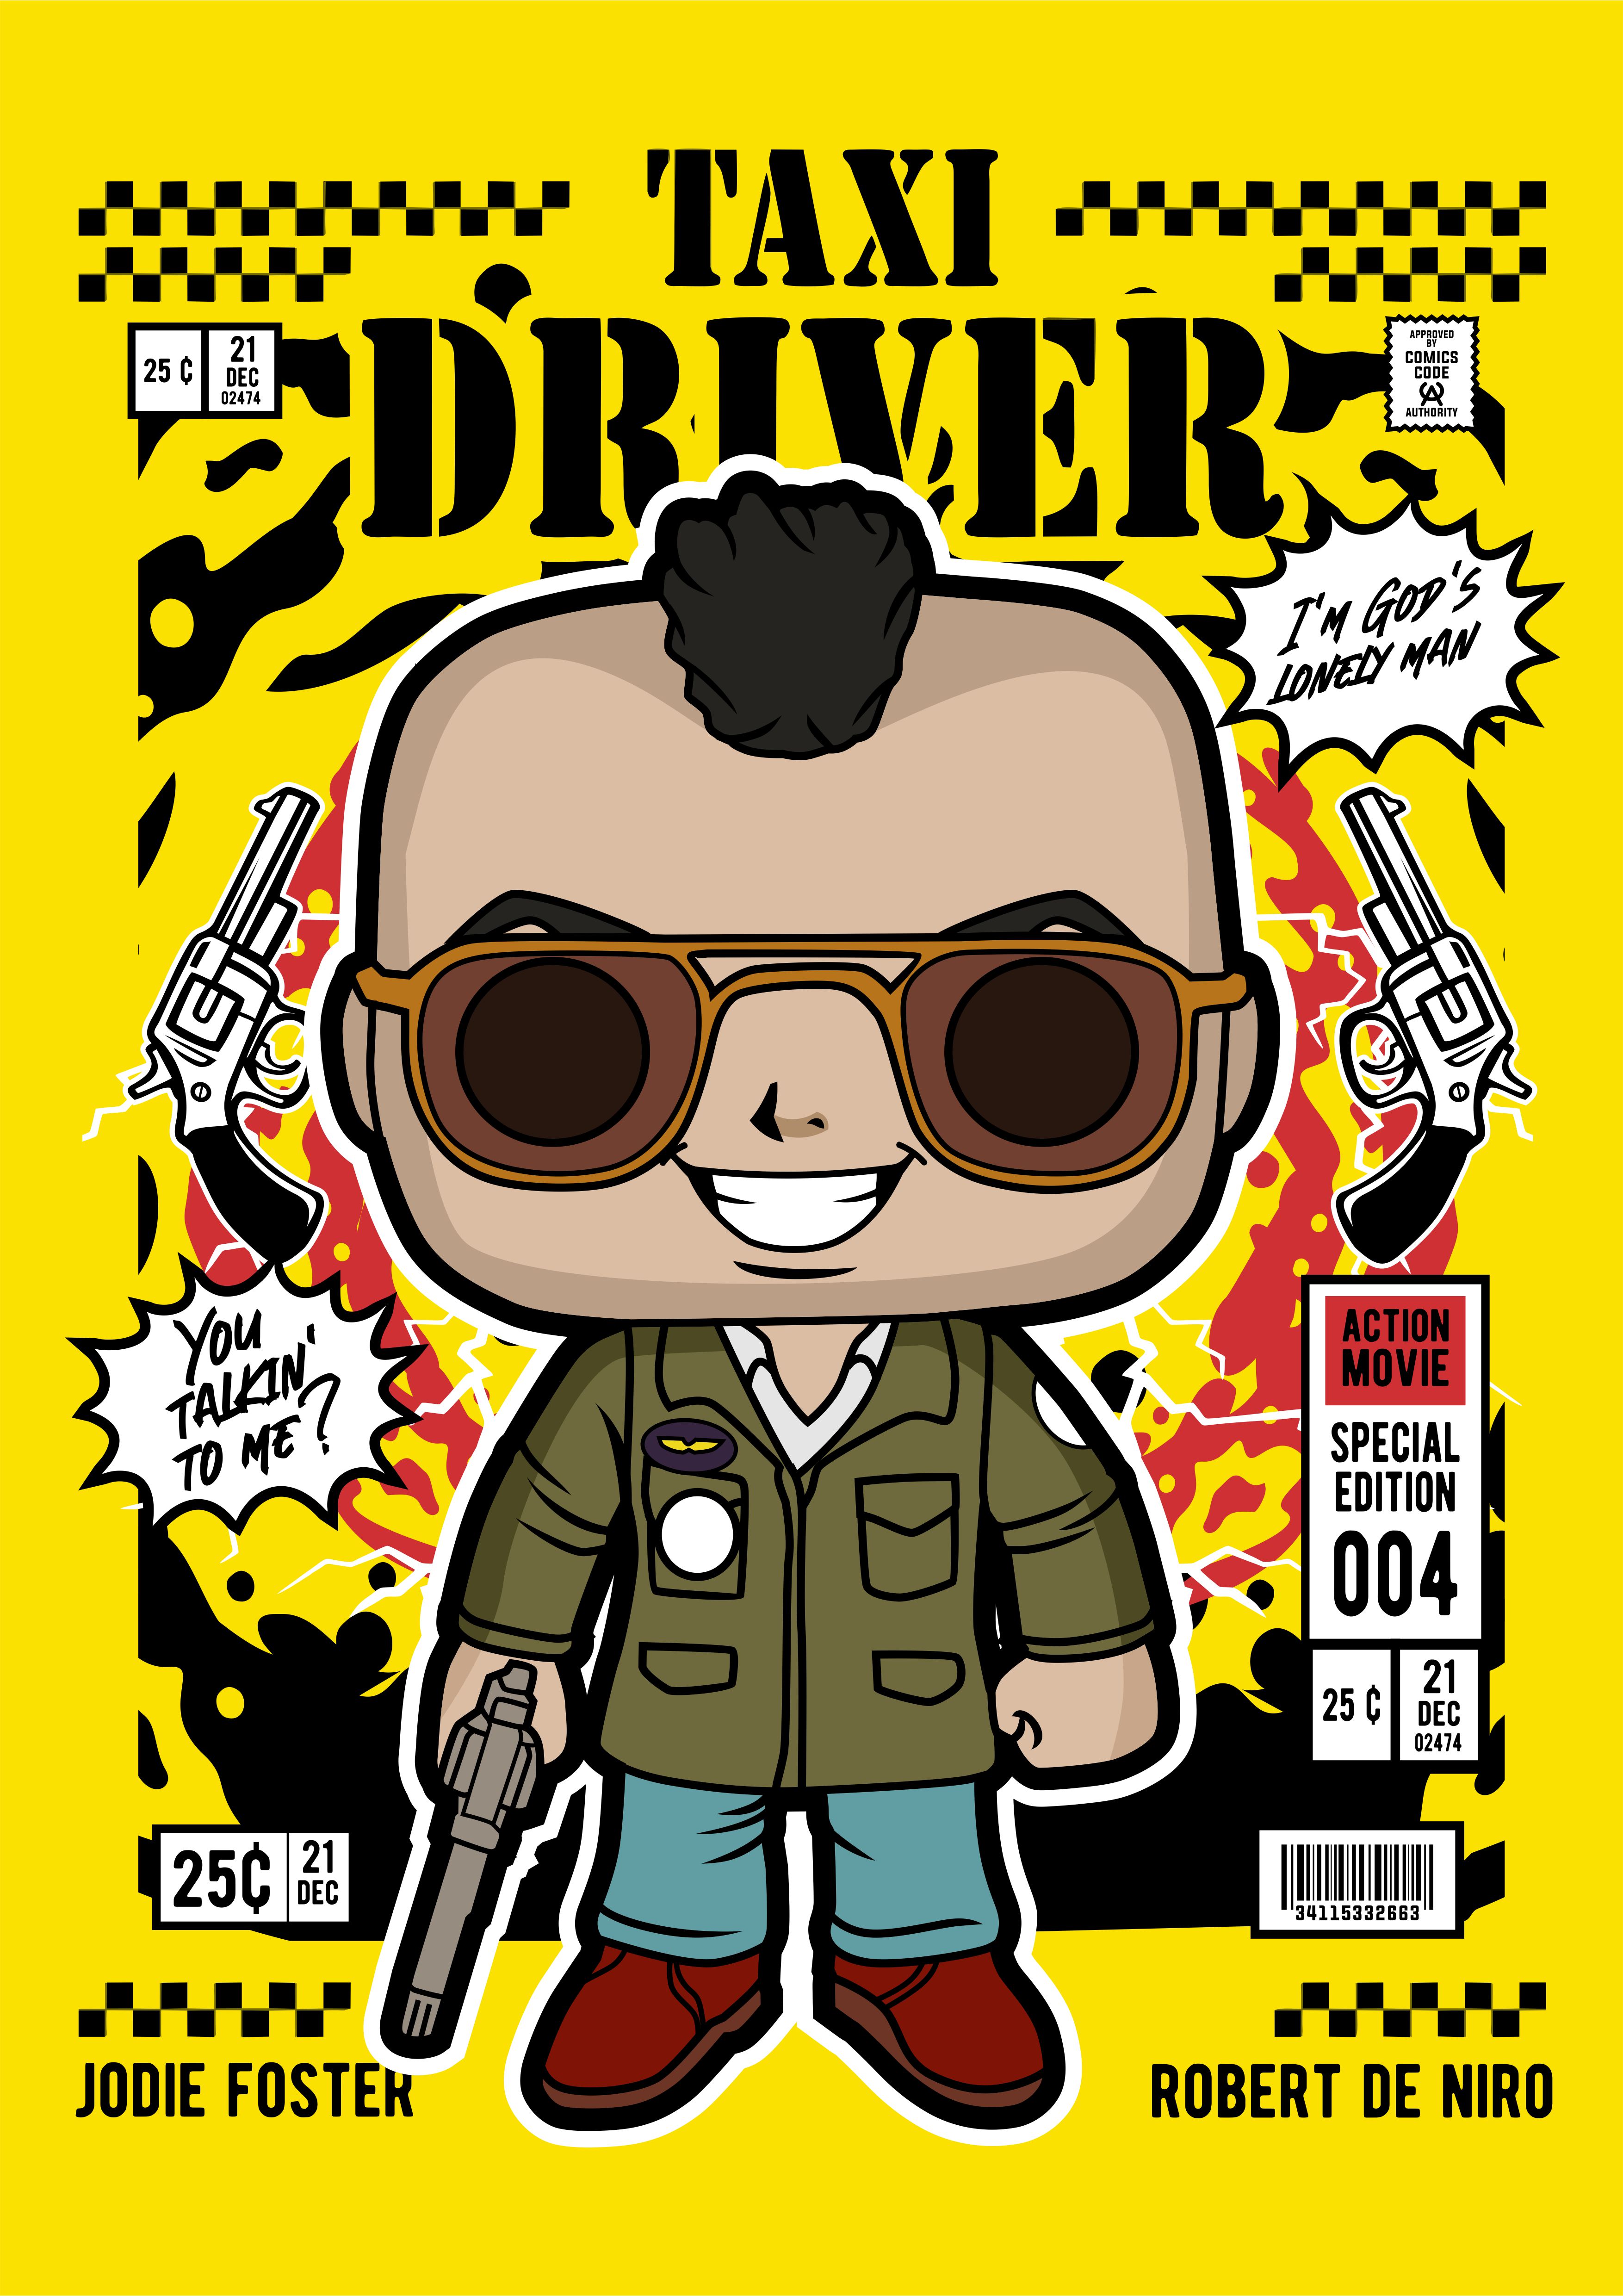 ComicBookPunk #110 Taxi Driver Robert De Niro